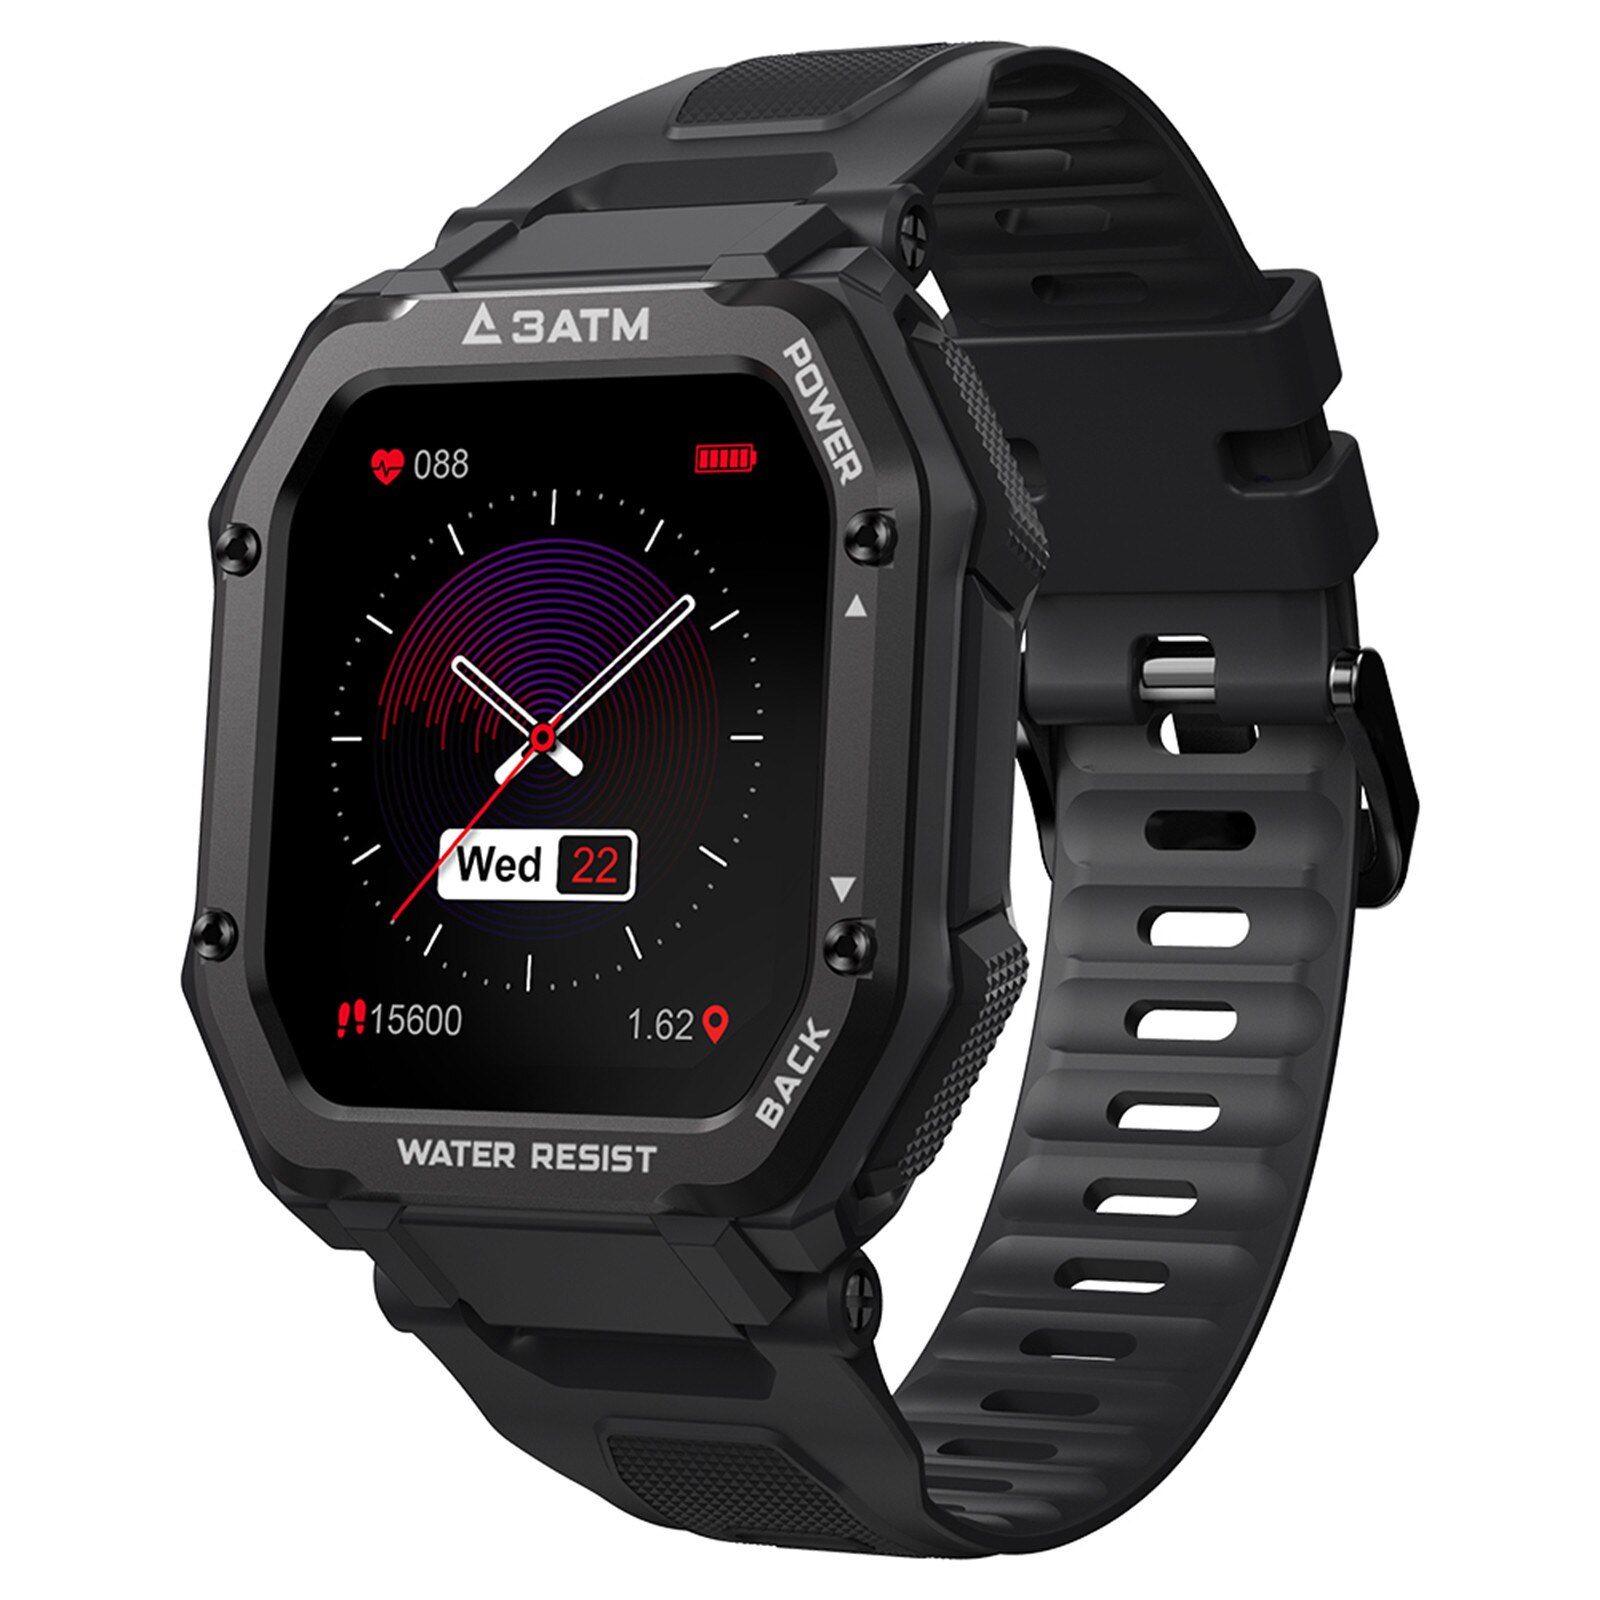 Smartwatch kospet rock watch för män utomhus sport vattentät fitness tracker blodtrycksmätare smart watch: Default Title